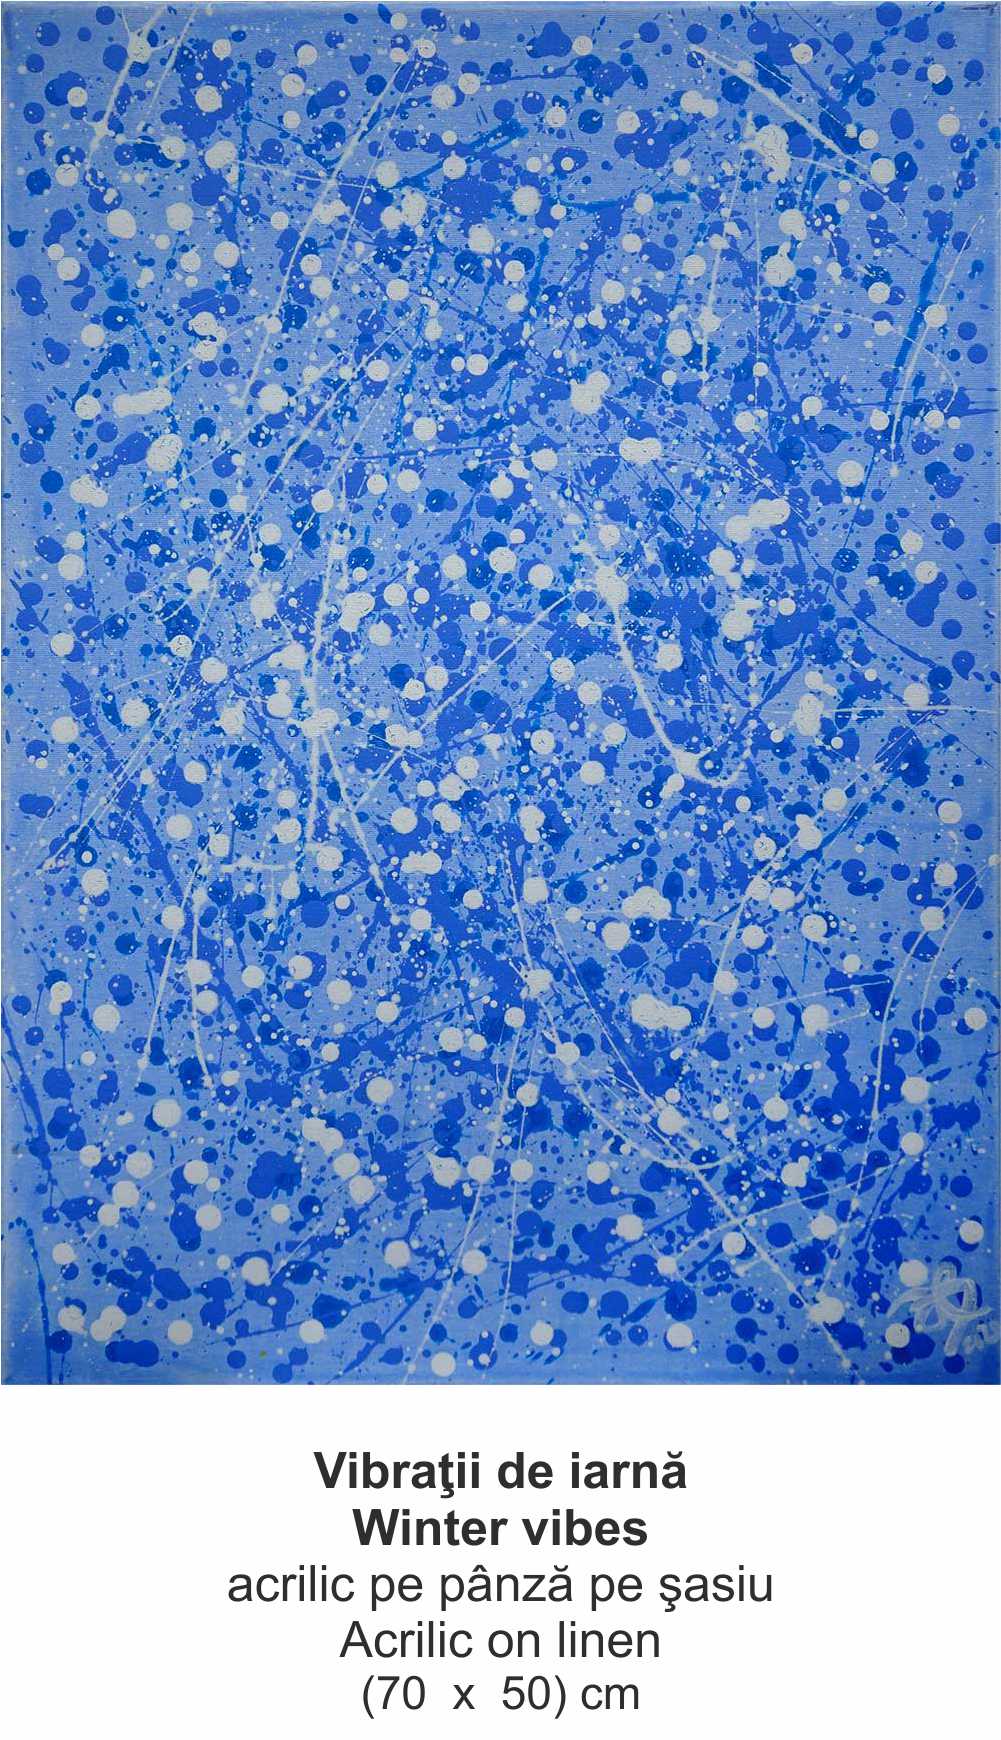 „Vibraţii de iarnă” („Winter vibes ”) - acrilic pe pânză pe şasiu (Acrilic on linen) - (70  x  50) cm - img 53